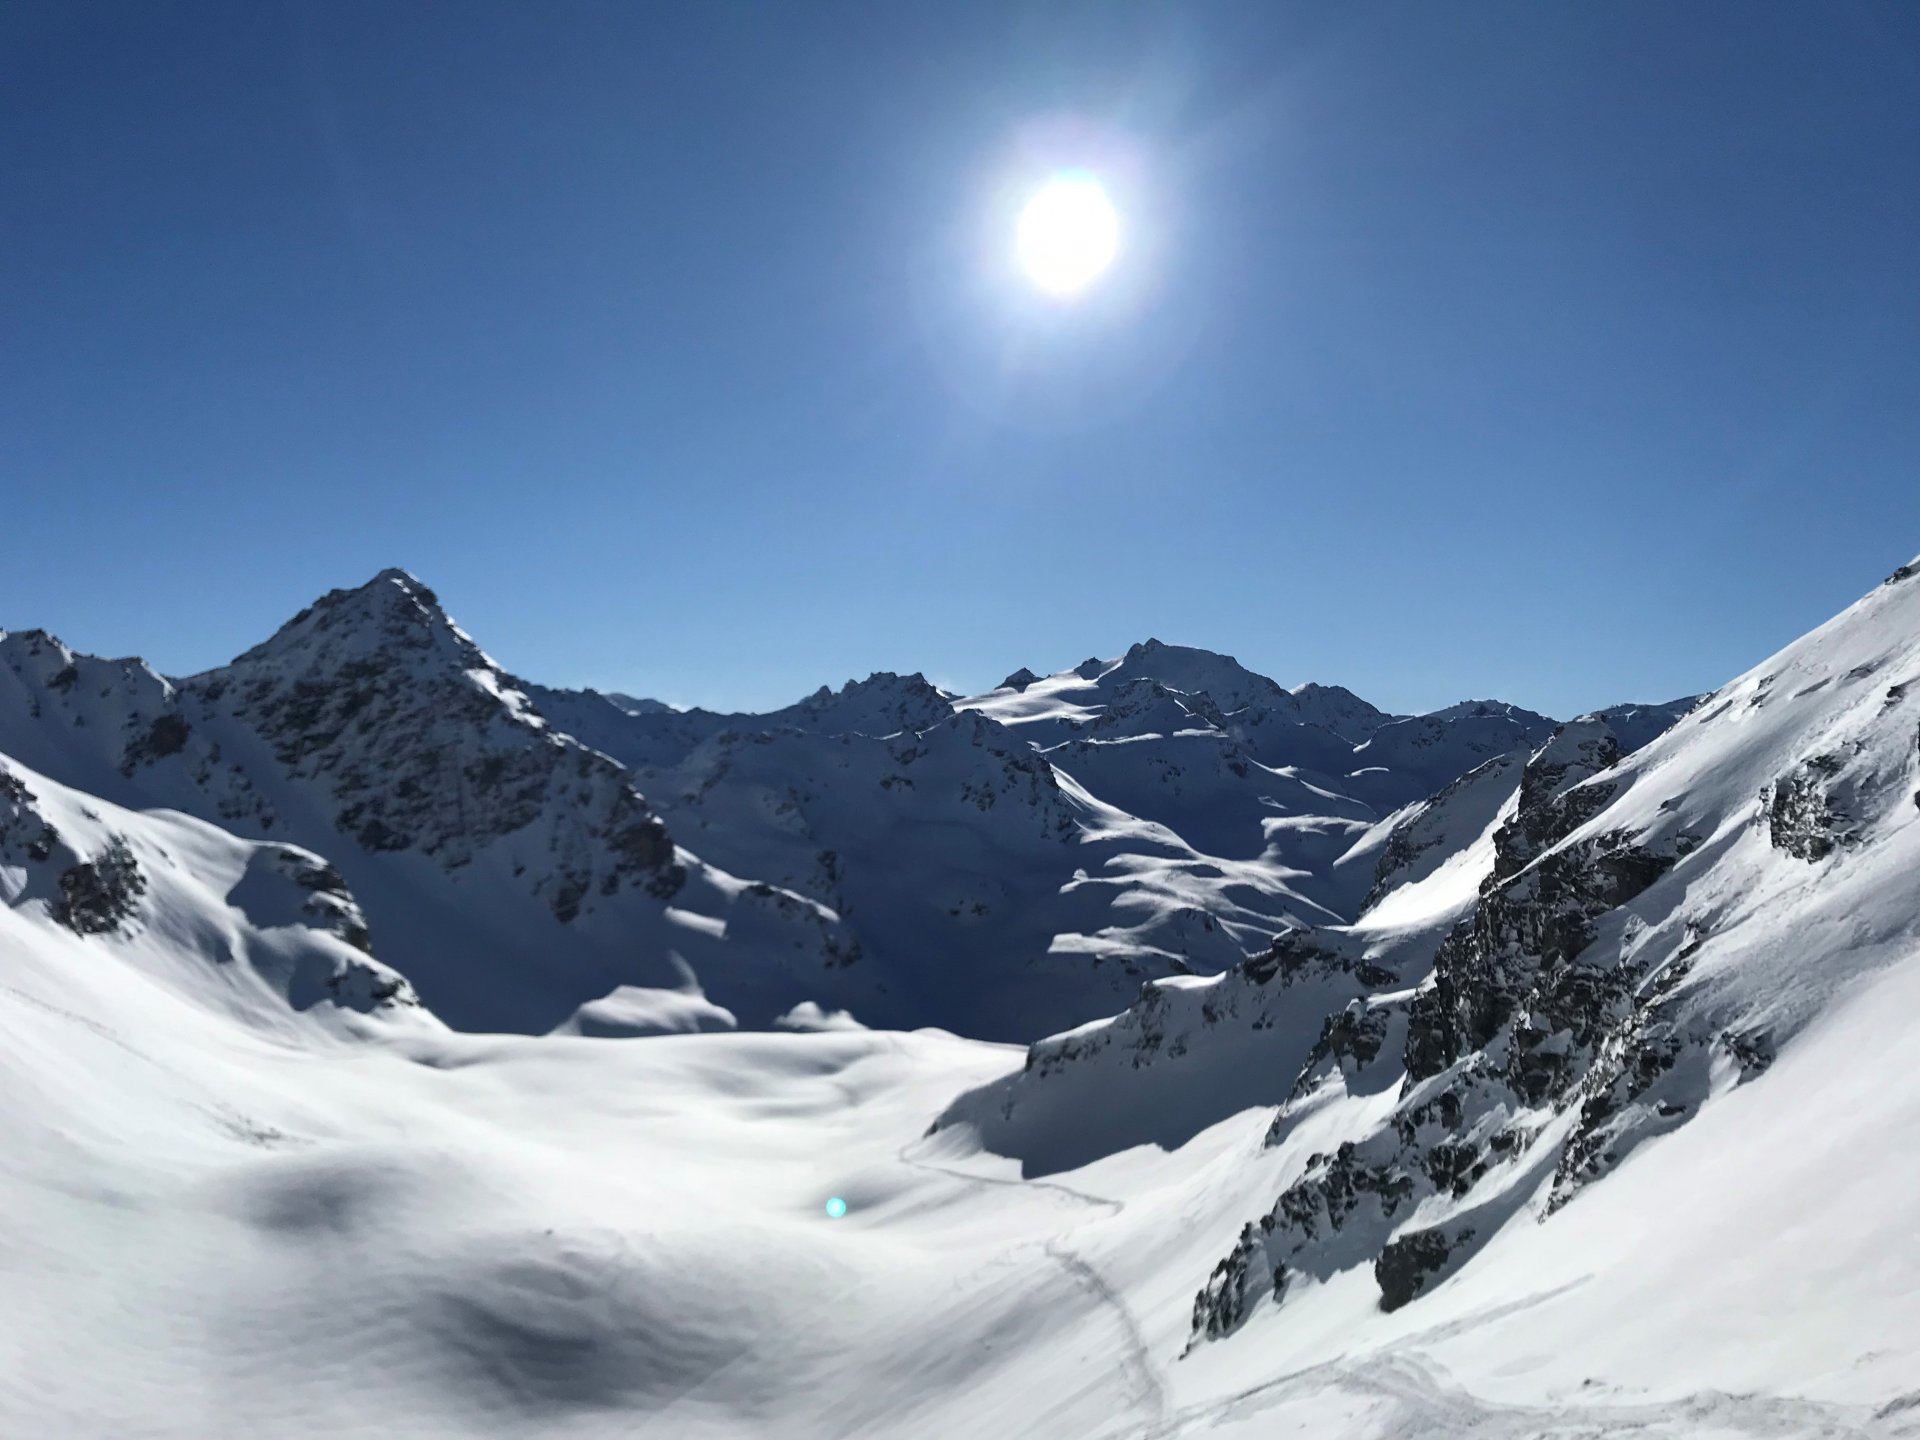 Ski mountaineering - Haute Route to Zermatt | Chamonix Guides